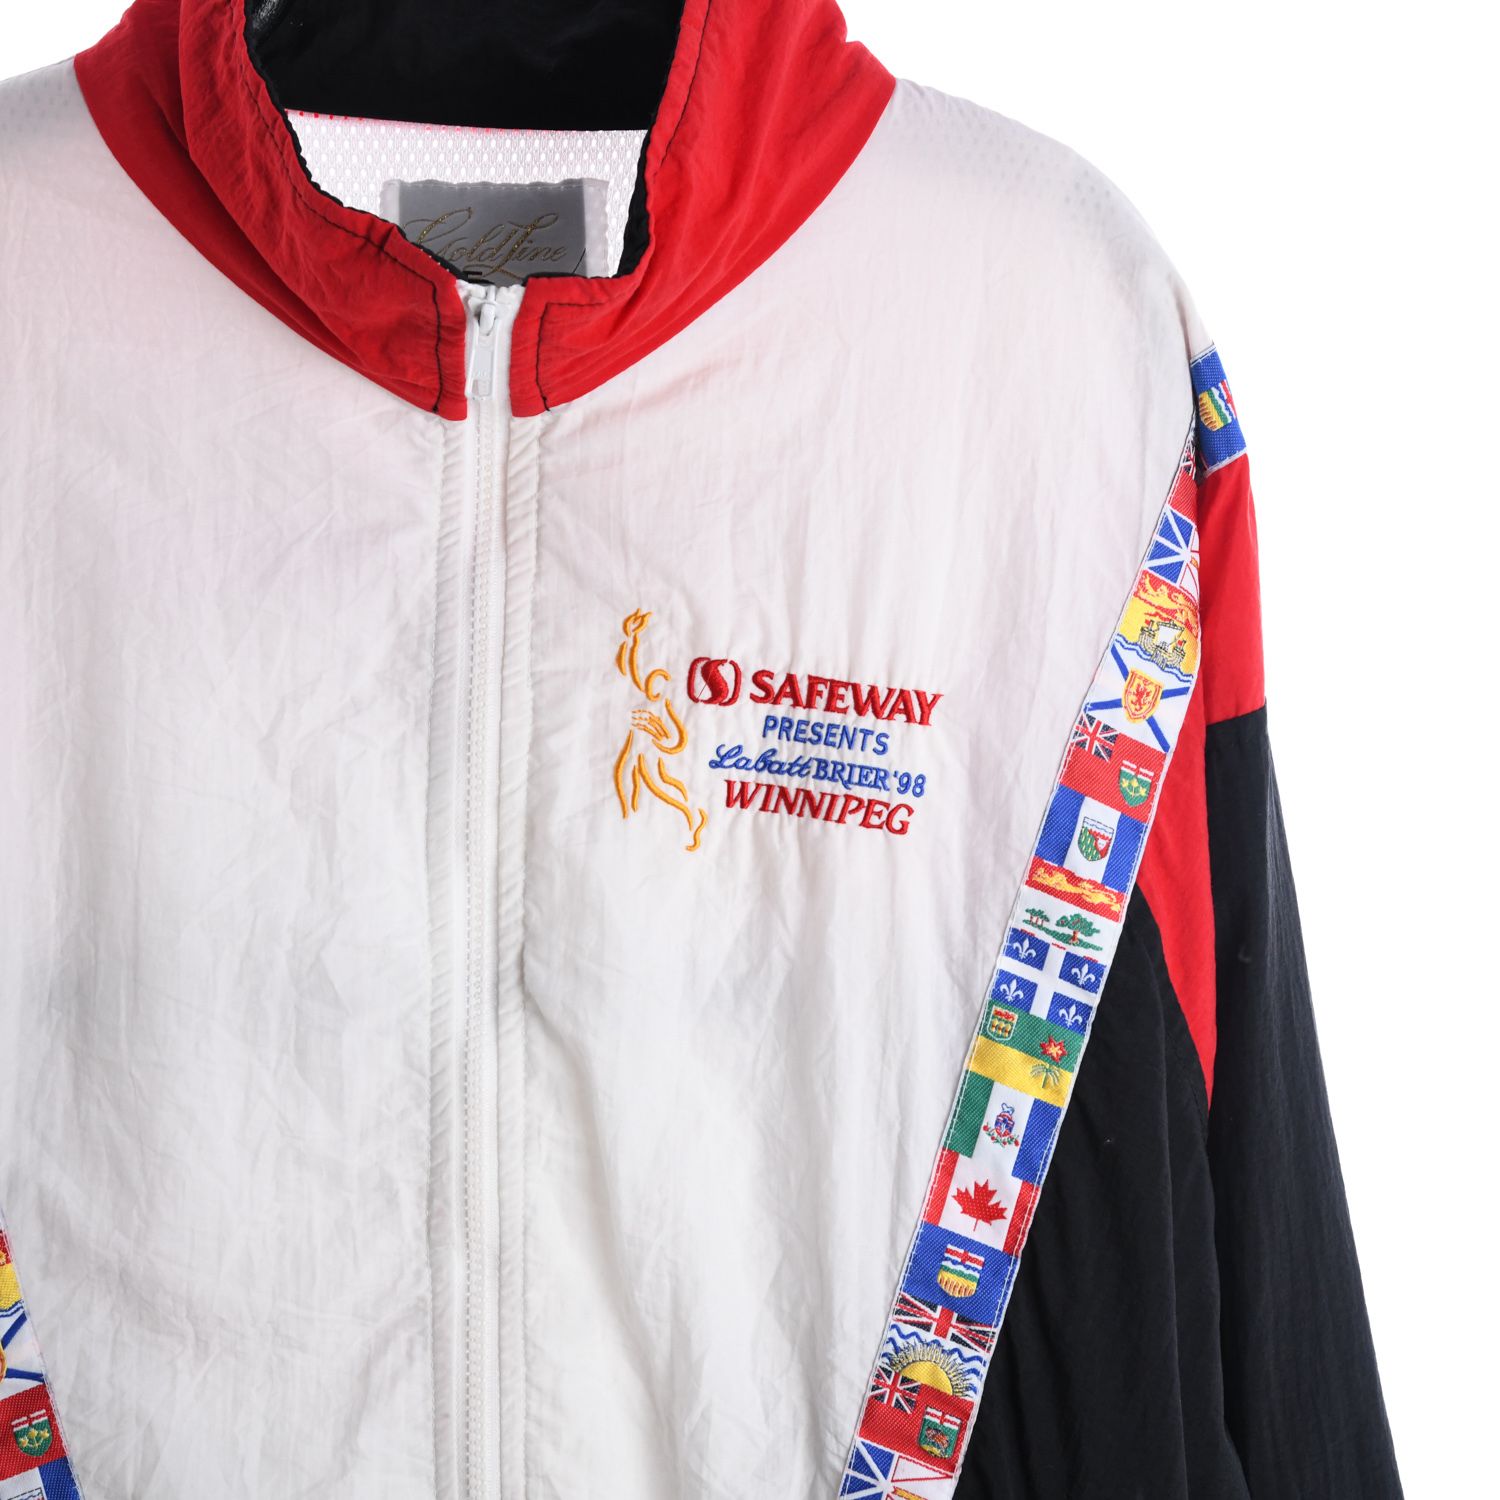 1998 Labatt Brier Curling Championship Shell Jacket